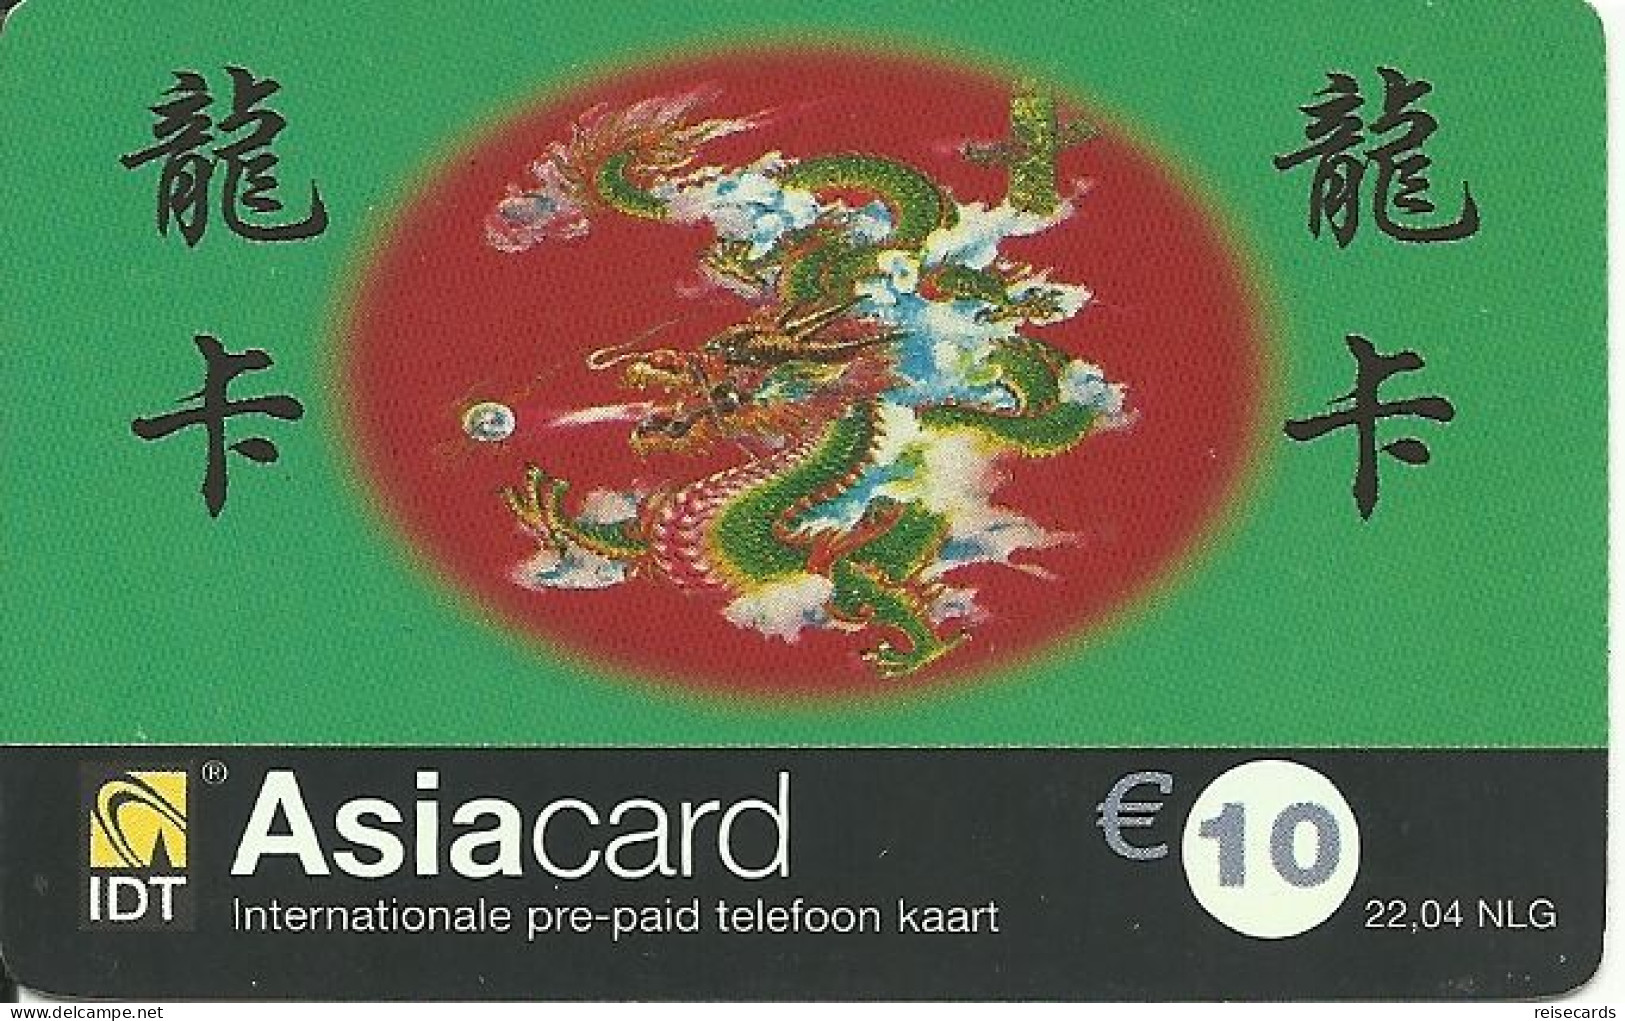 Netherlands: Prepaid IDT - Asia Card 12.03 - GSM-Kaarten, Bijvulling & Vooraf Betaalde